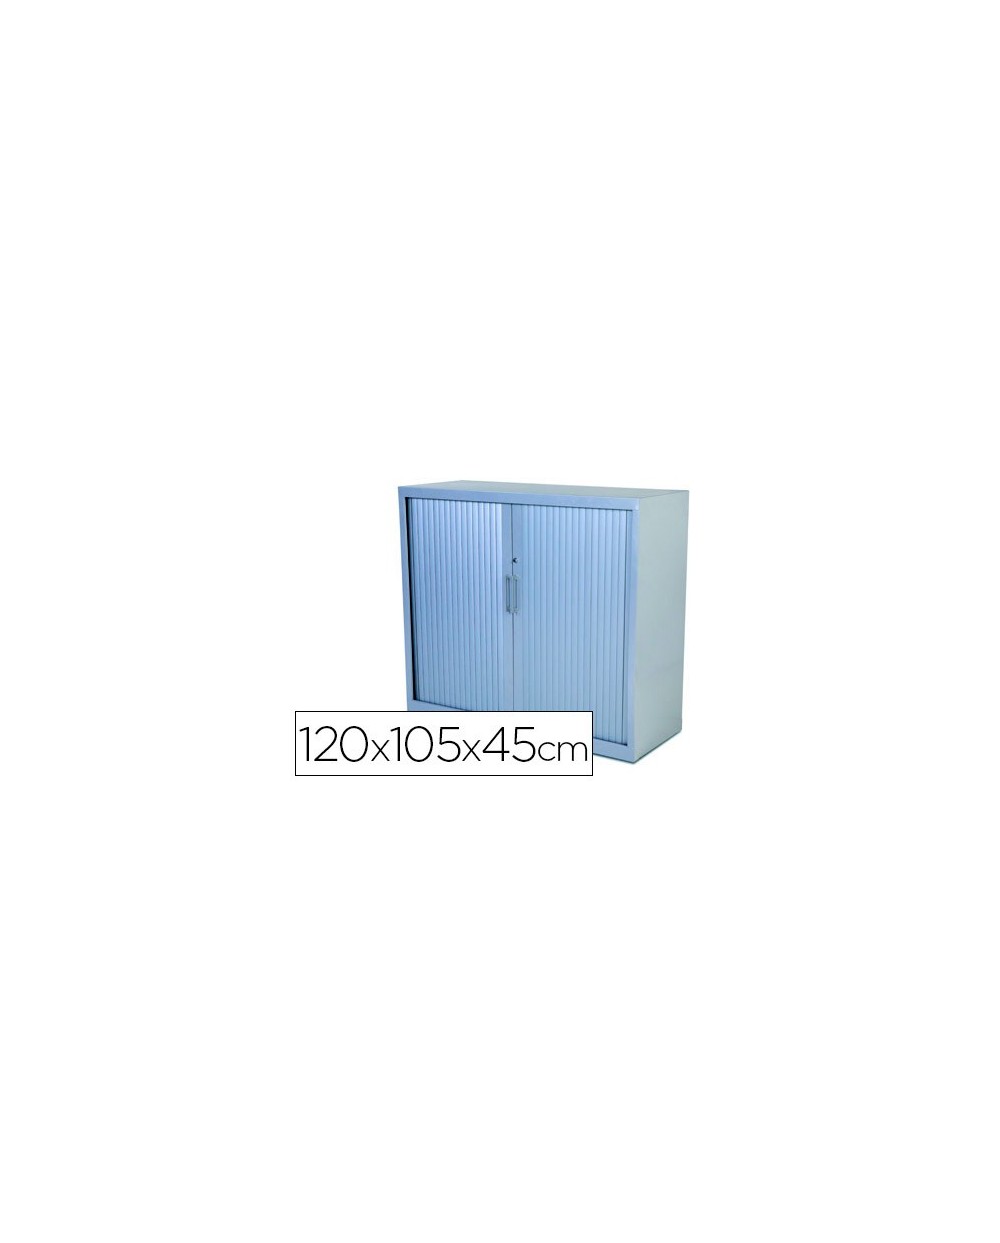 Armario metalico rocada dos puertas tipo persiana incluye dos balda serie store 120x105x45 cm acabado ac00